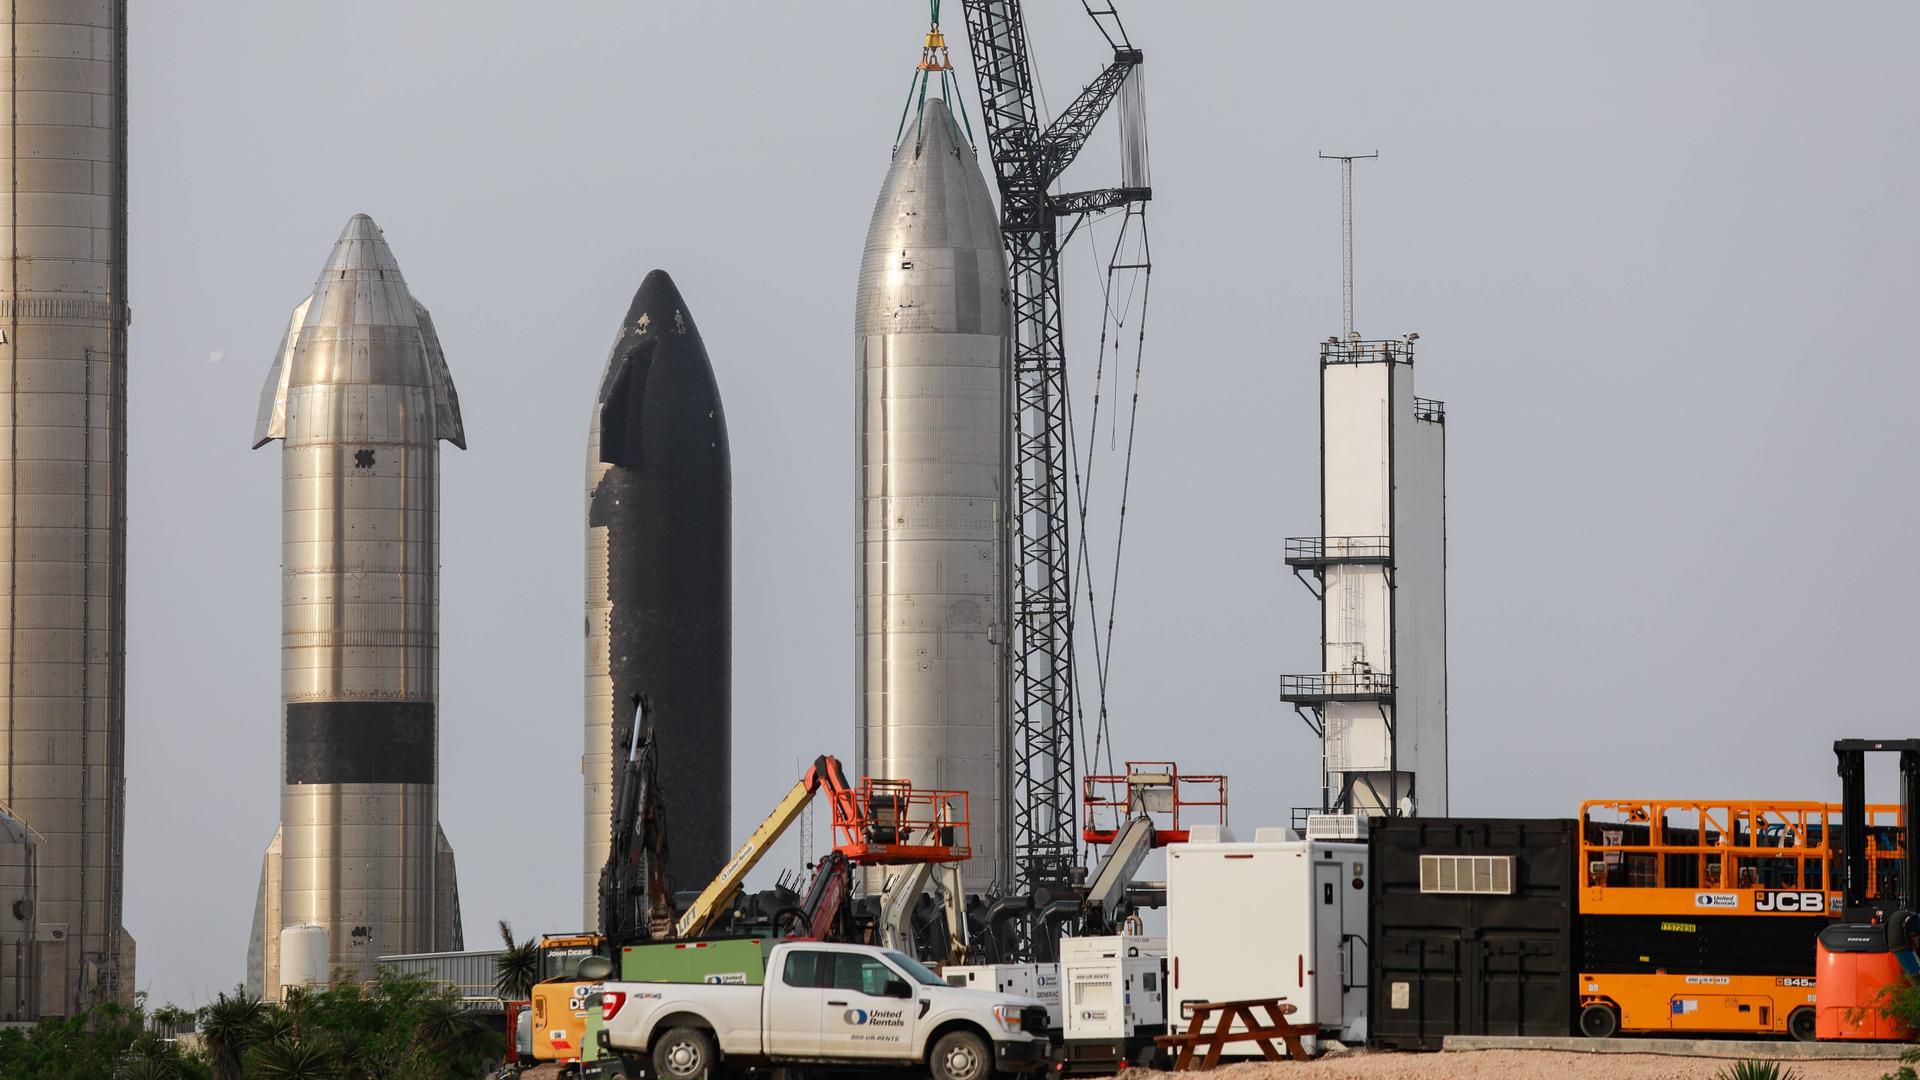 Neue Rakete Starship von Space X soll Erde umrunden